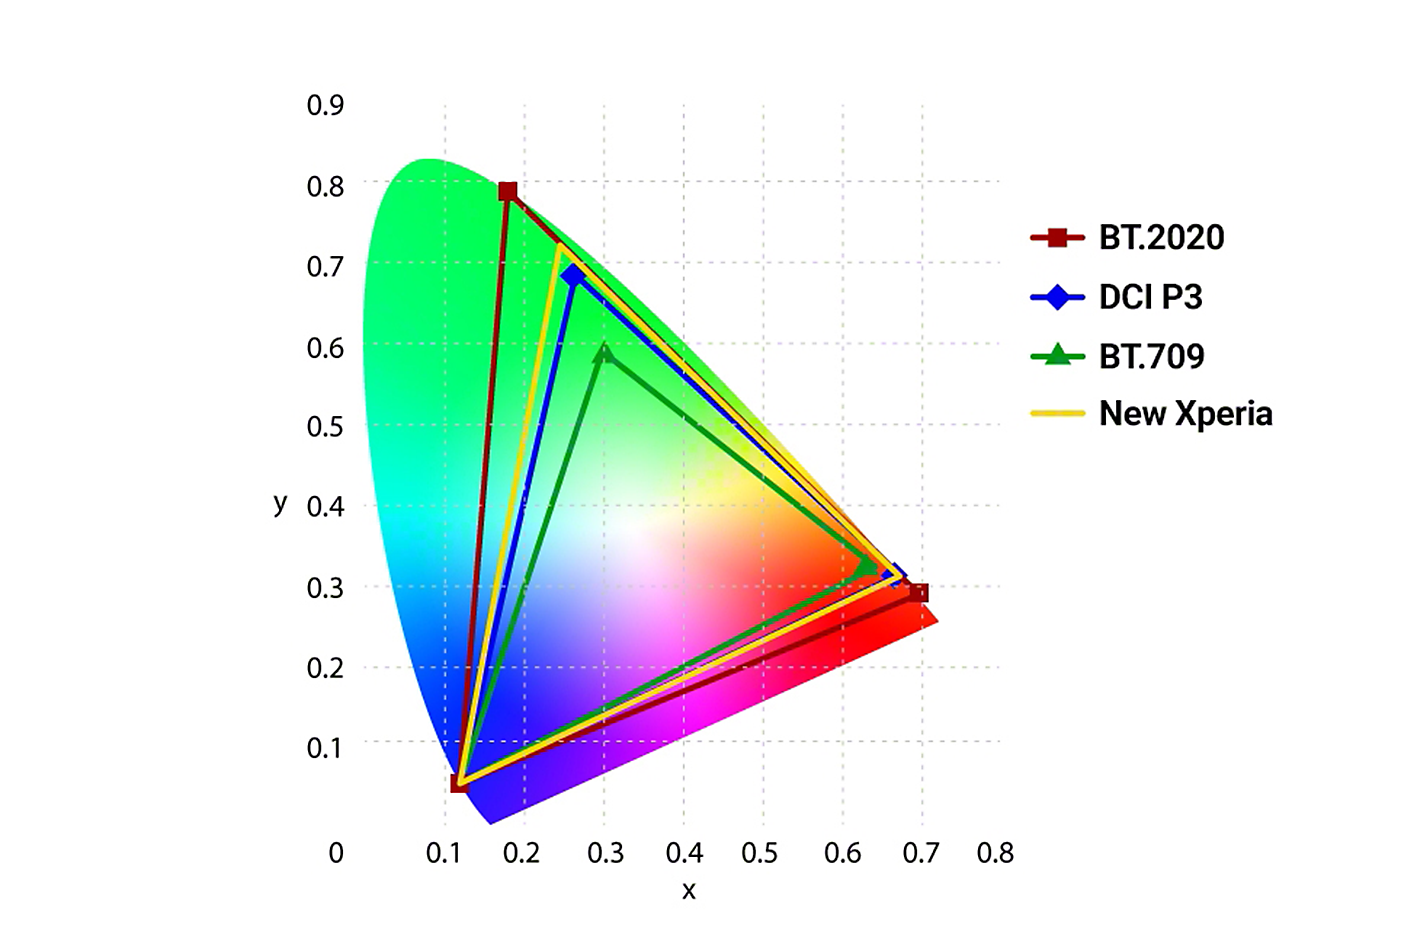 Grafika s porovnaním presnosti farieb BT.2020, DCI P3, BT.709 a nového smartfónu Xperia